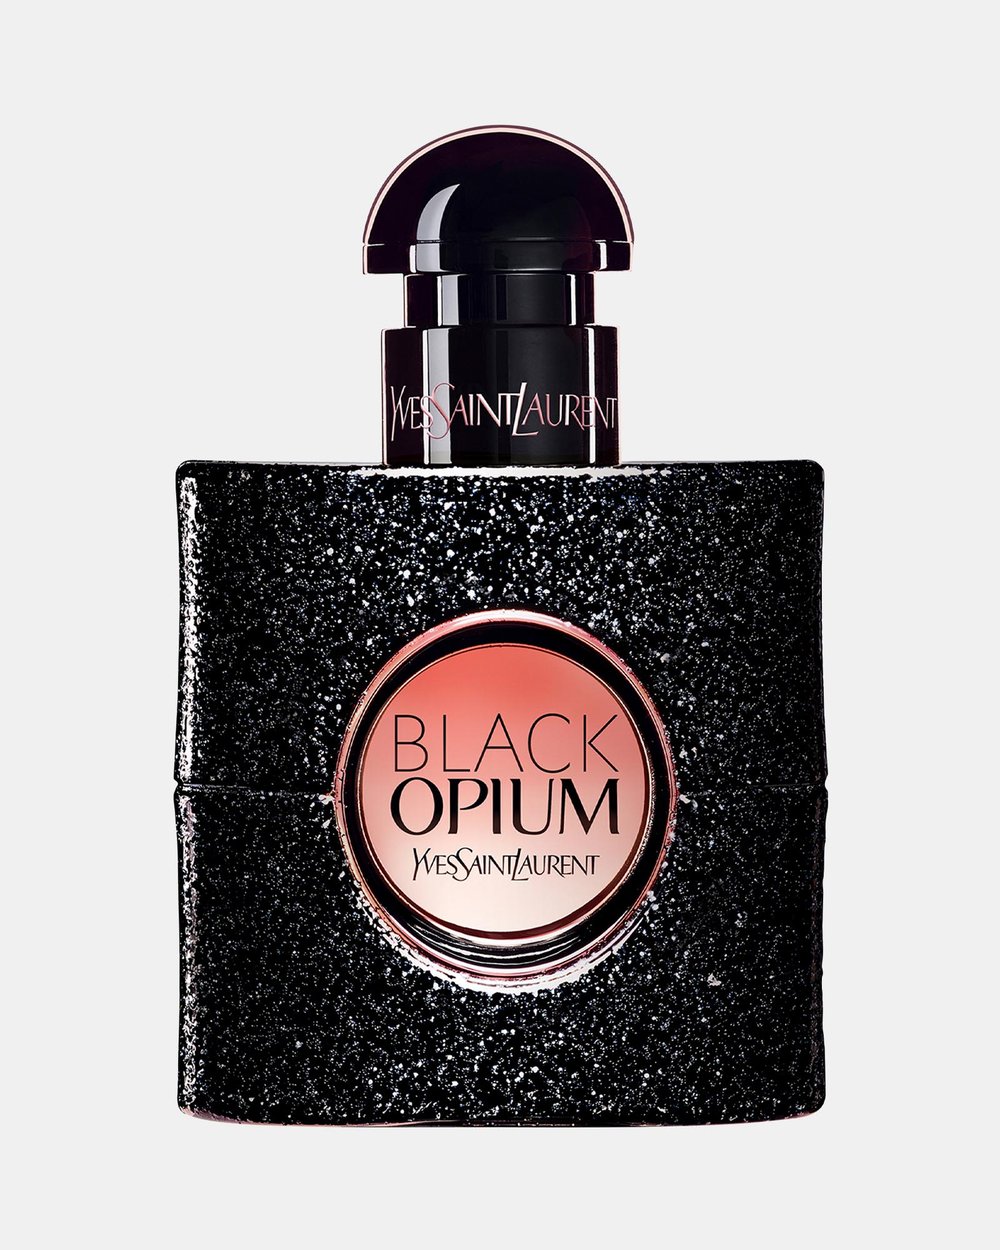 بلاك اوبيوم Black Opium من  ايف سان لوران Yves saint Laurent